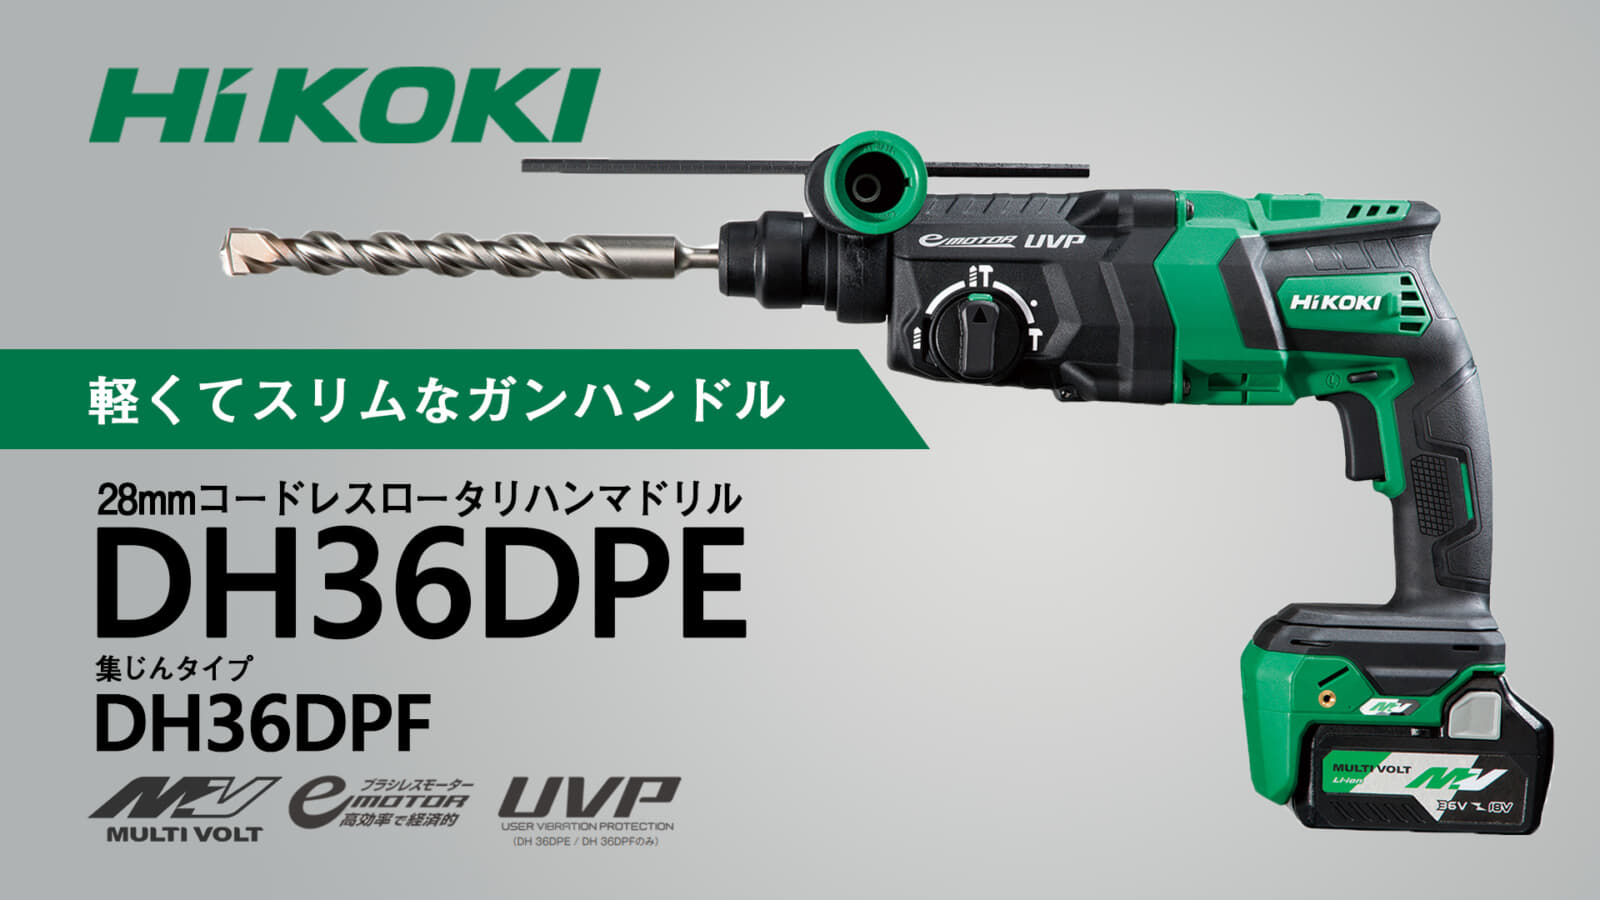 HiKOKI DH36DPE 28mmコードレスロータリハンマドリル、軽くてスリムな 